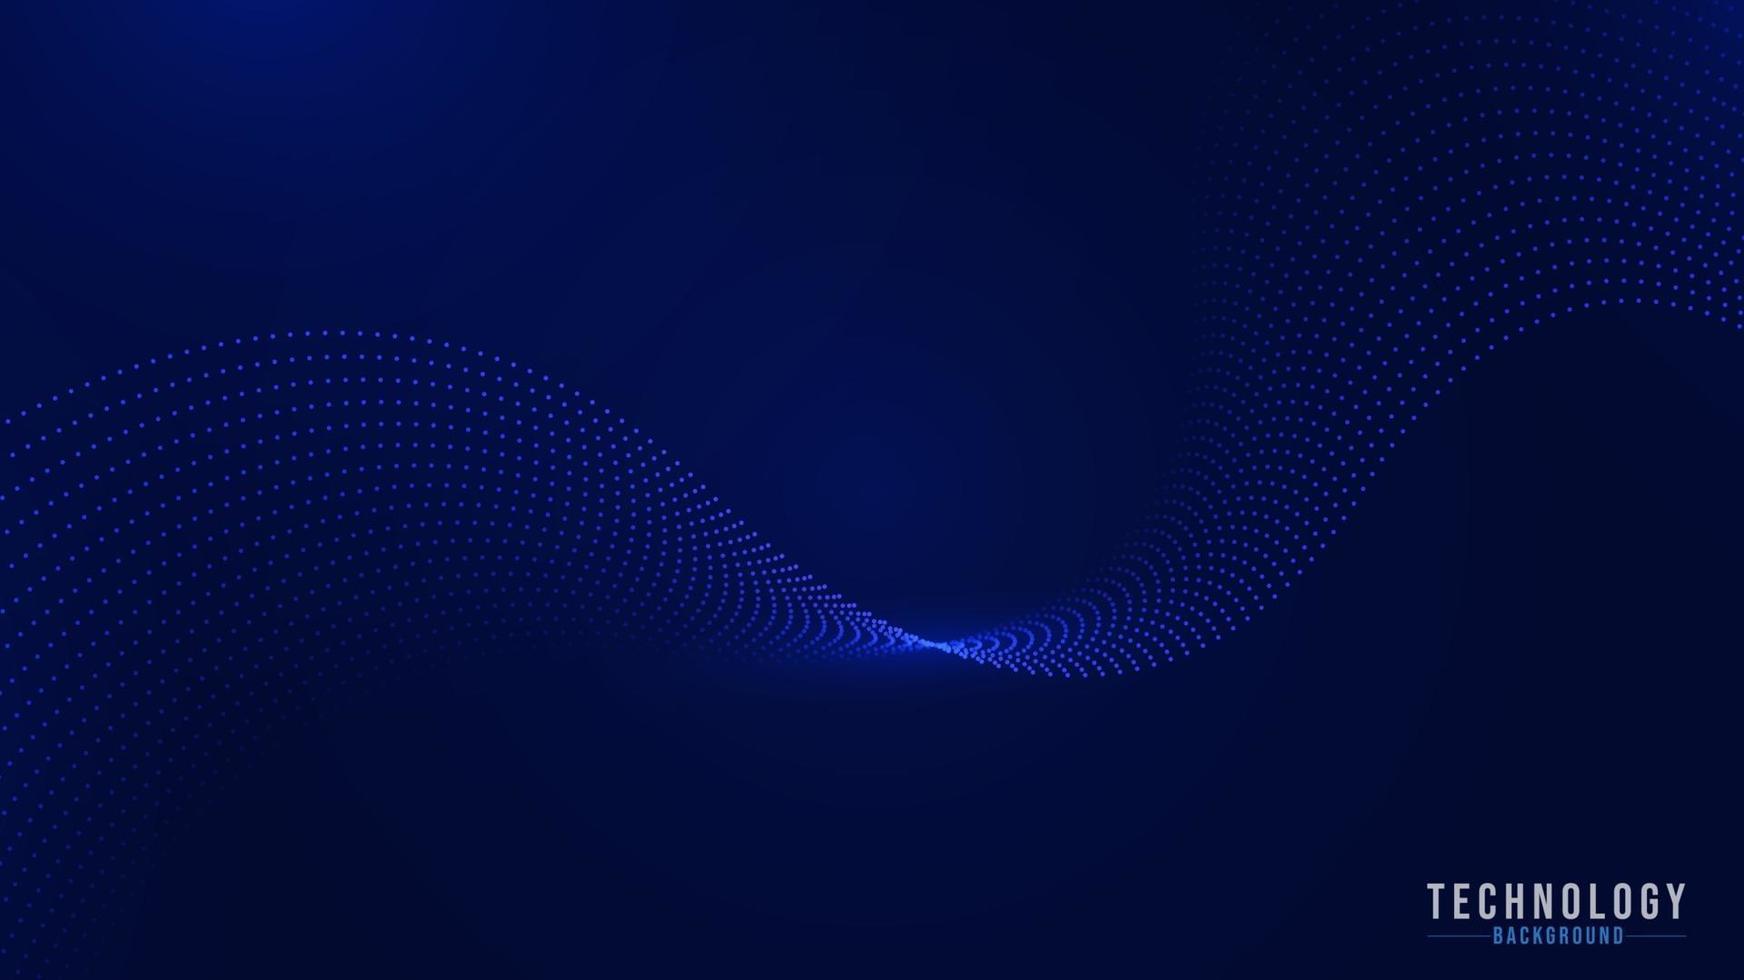 abstrakter Hintergrund der blauen Welle. futuristische Punktwelle vektor